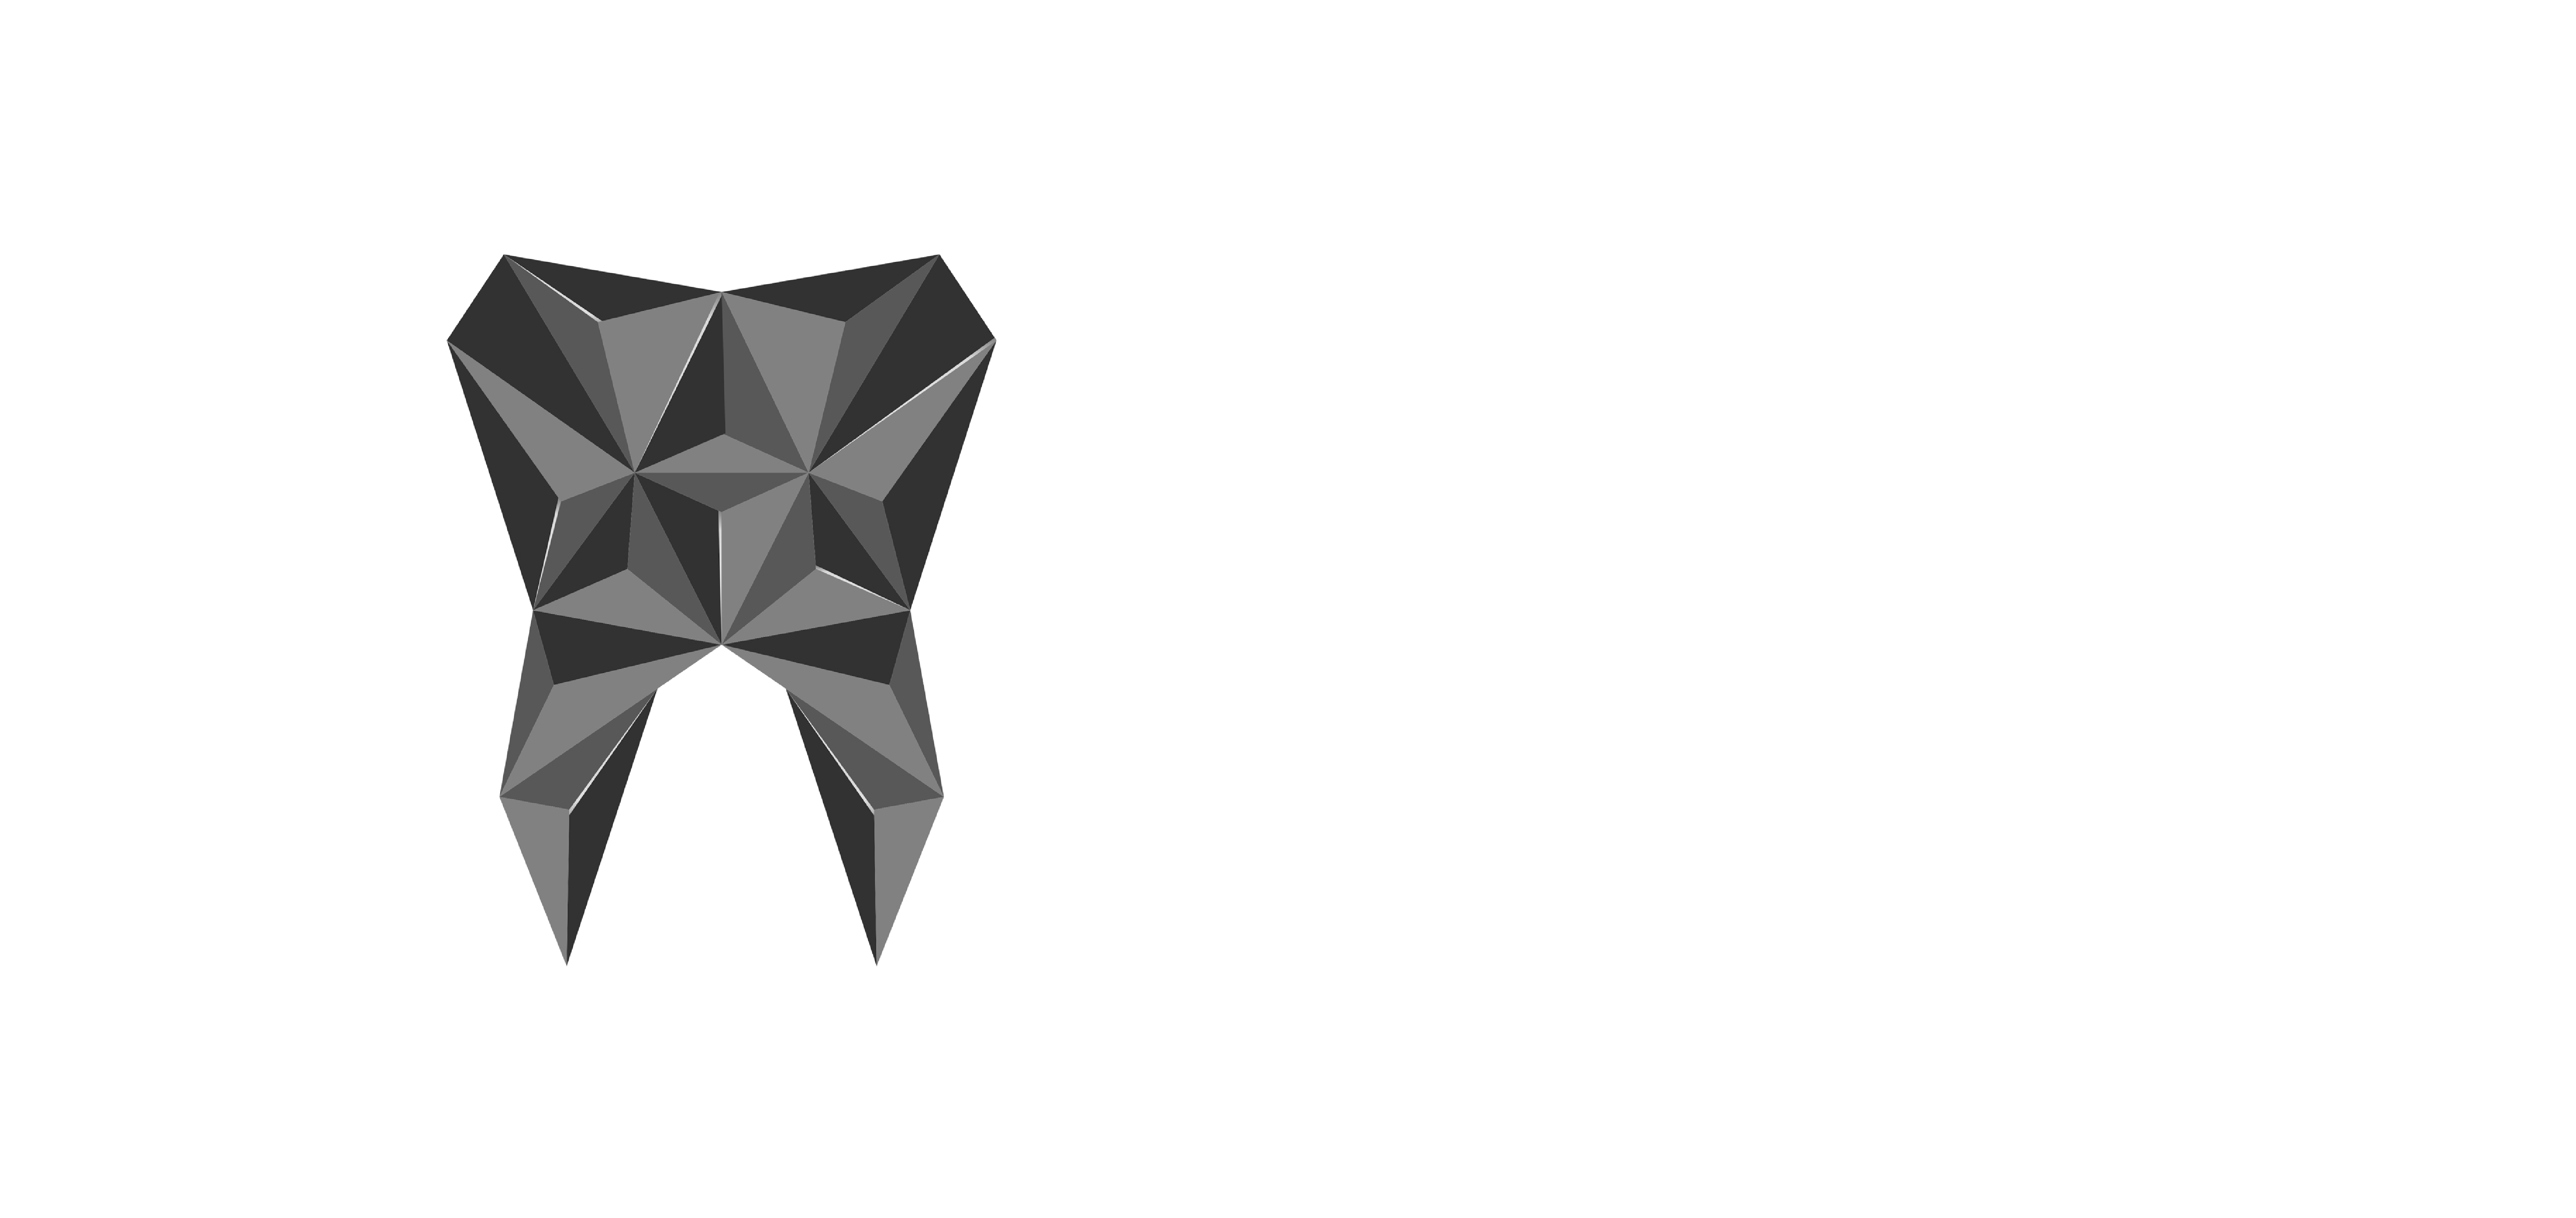 Salt Dental Clinic